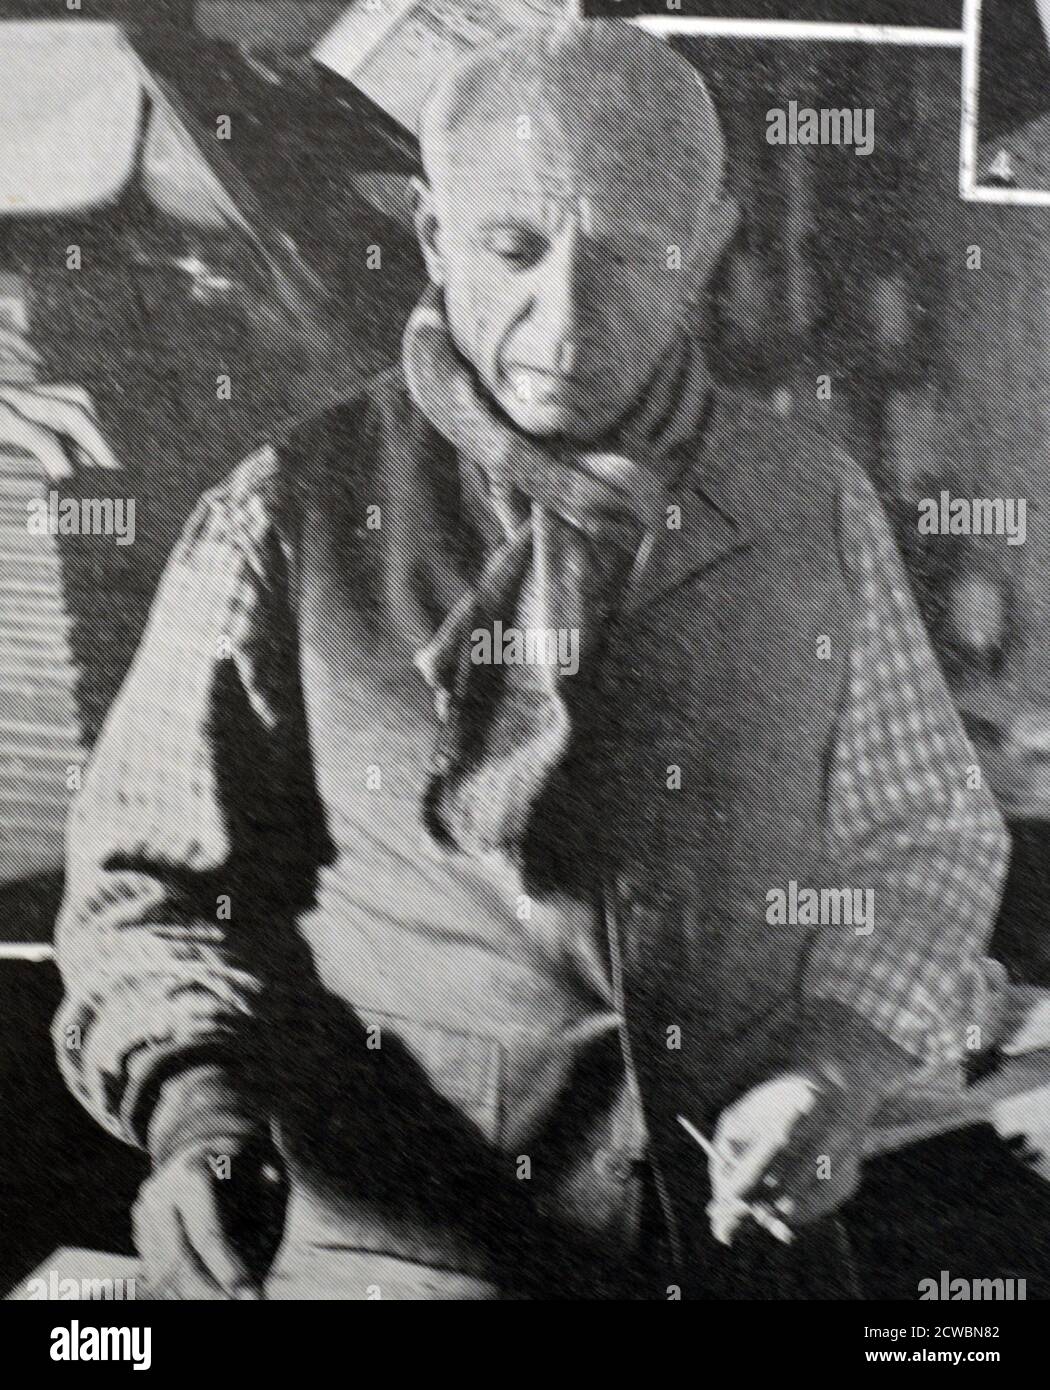 Photographie en noir et blanc du monde des arts et des lettres; artiste espagnol Pablo Picasso (1881-1973) décorant des plaques de céramique. Banque D'Images